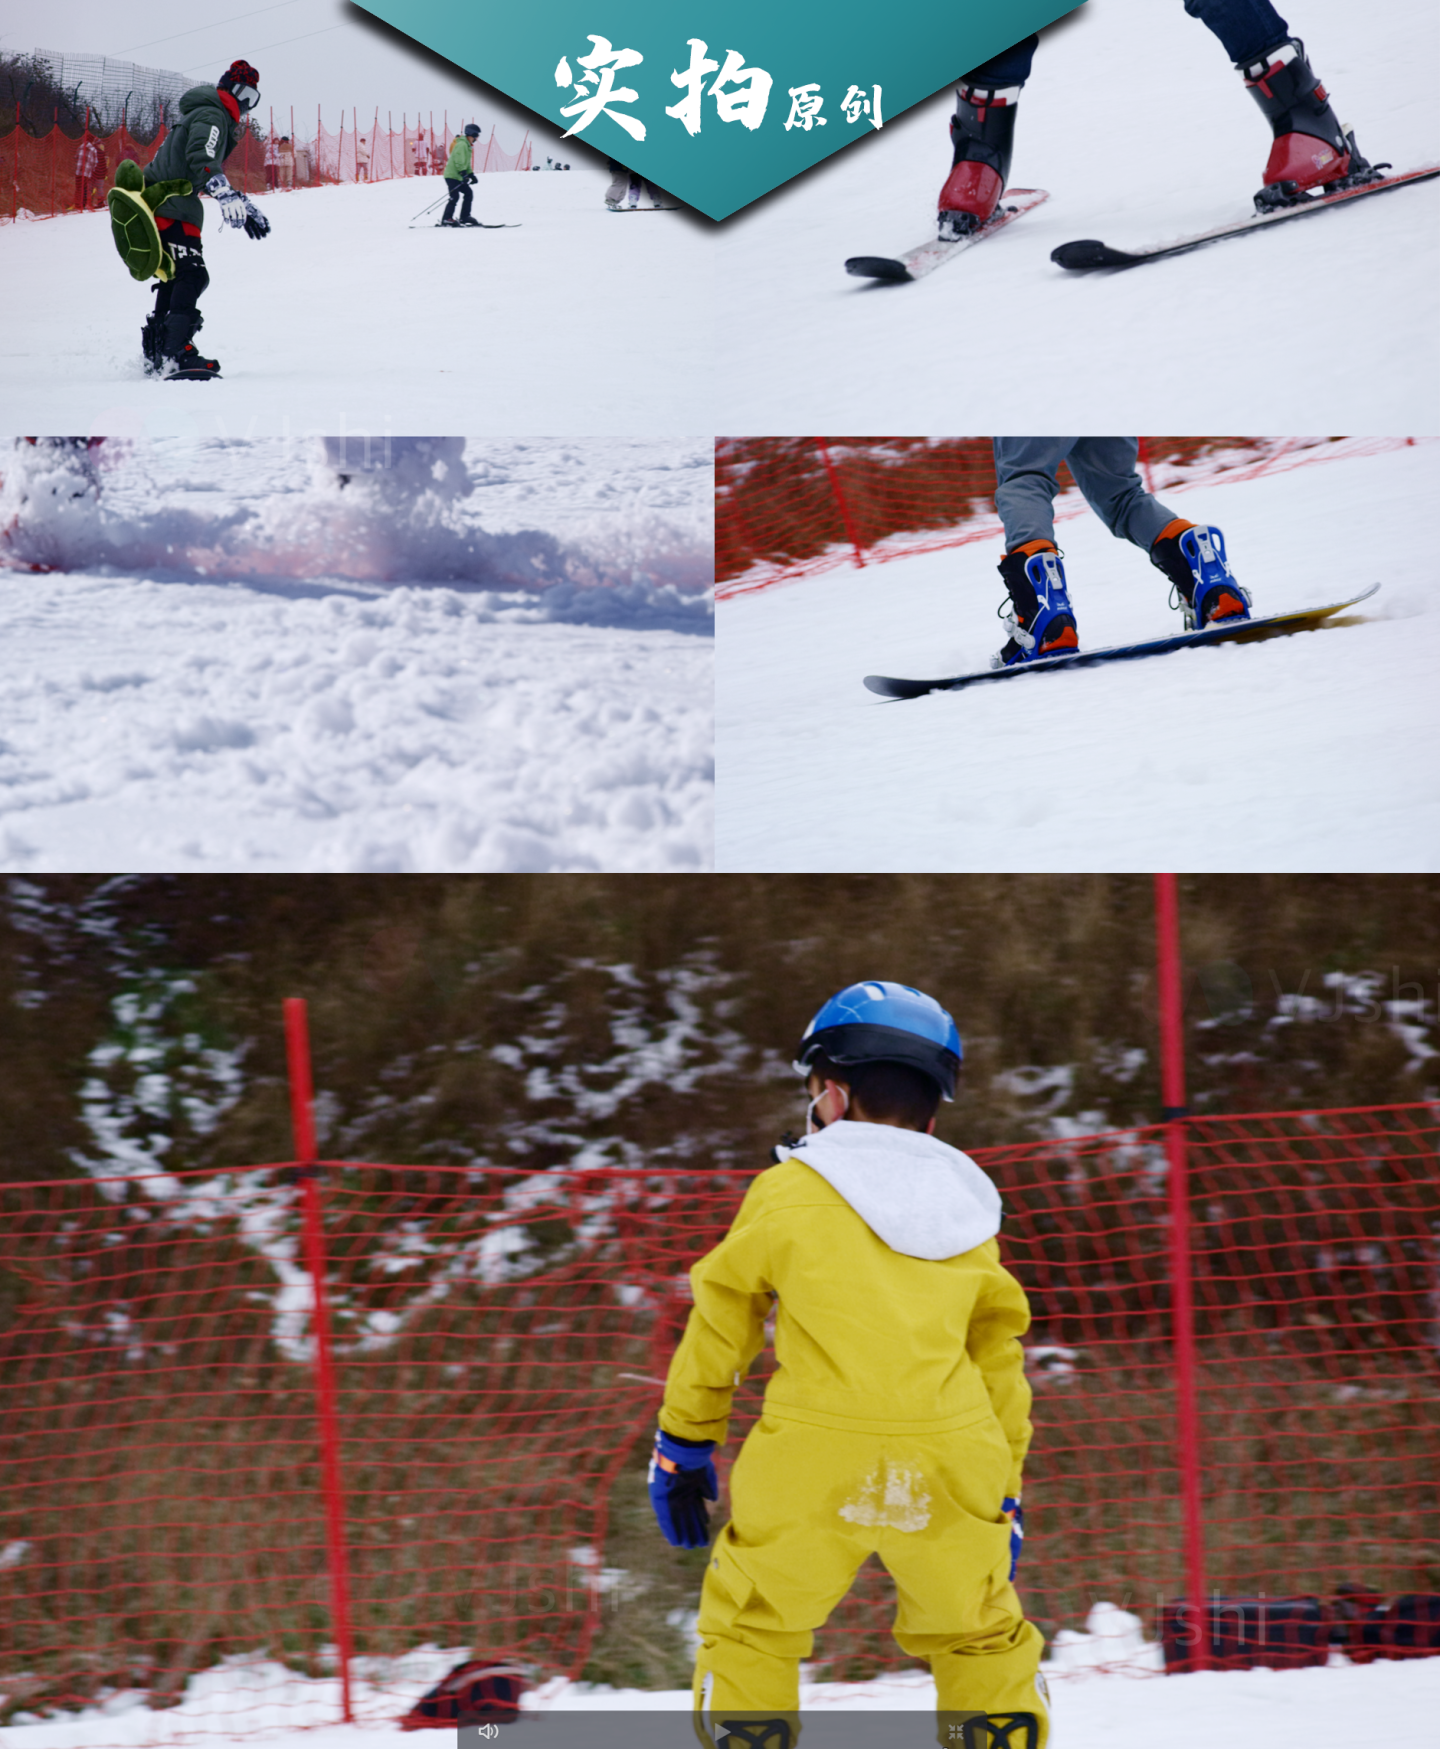 川西旅游曾家山单板滑雪冰雪运动洁白的雪地